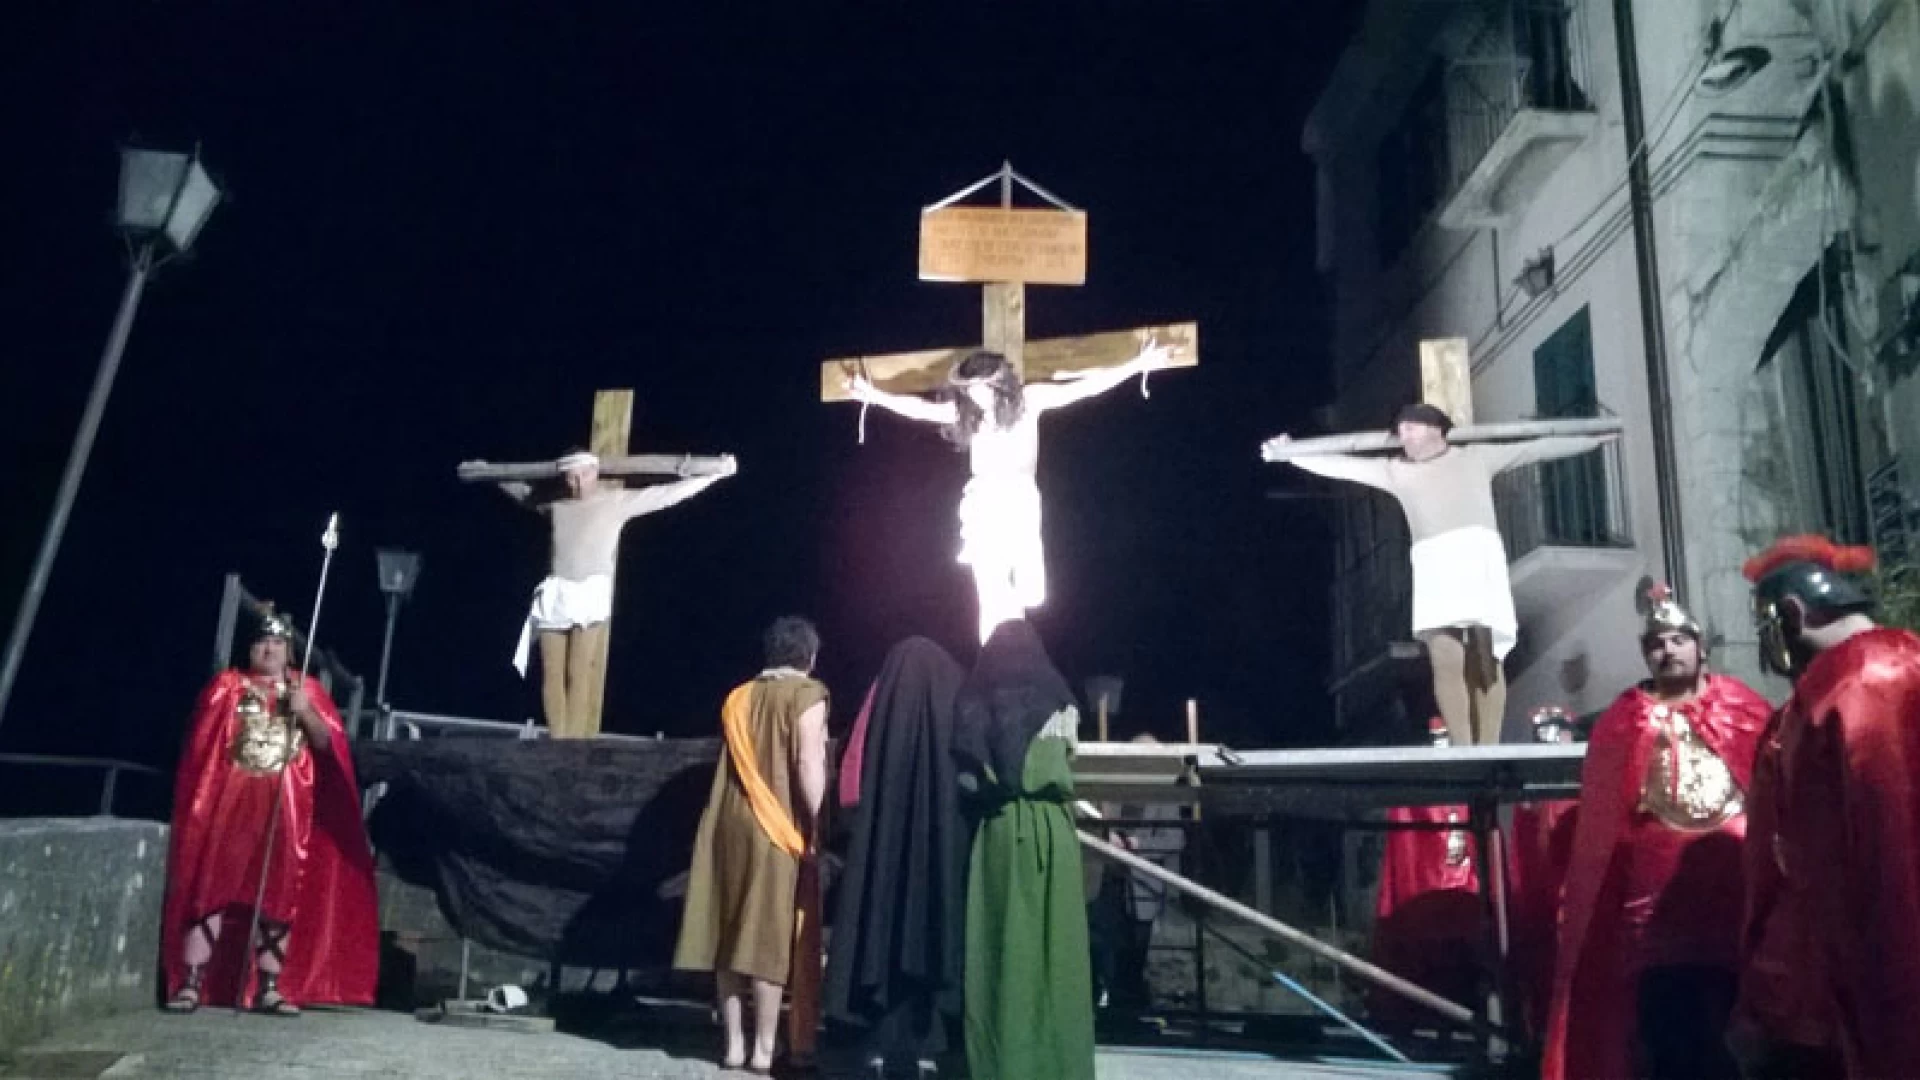 Colli a Volturno: domenica 9 aprile appuntamento con la “Via Dolorosa”. La rappresentazione della Passione del Cristo in piazza.